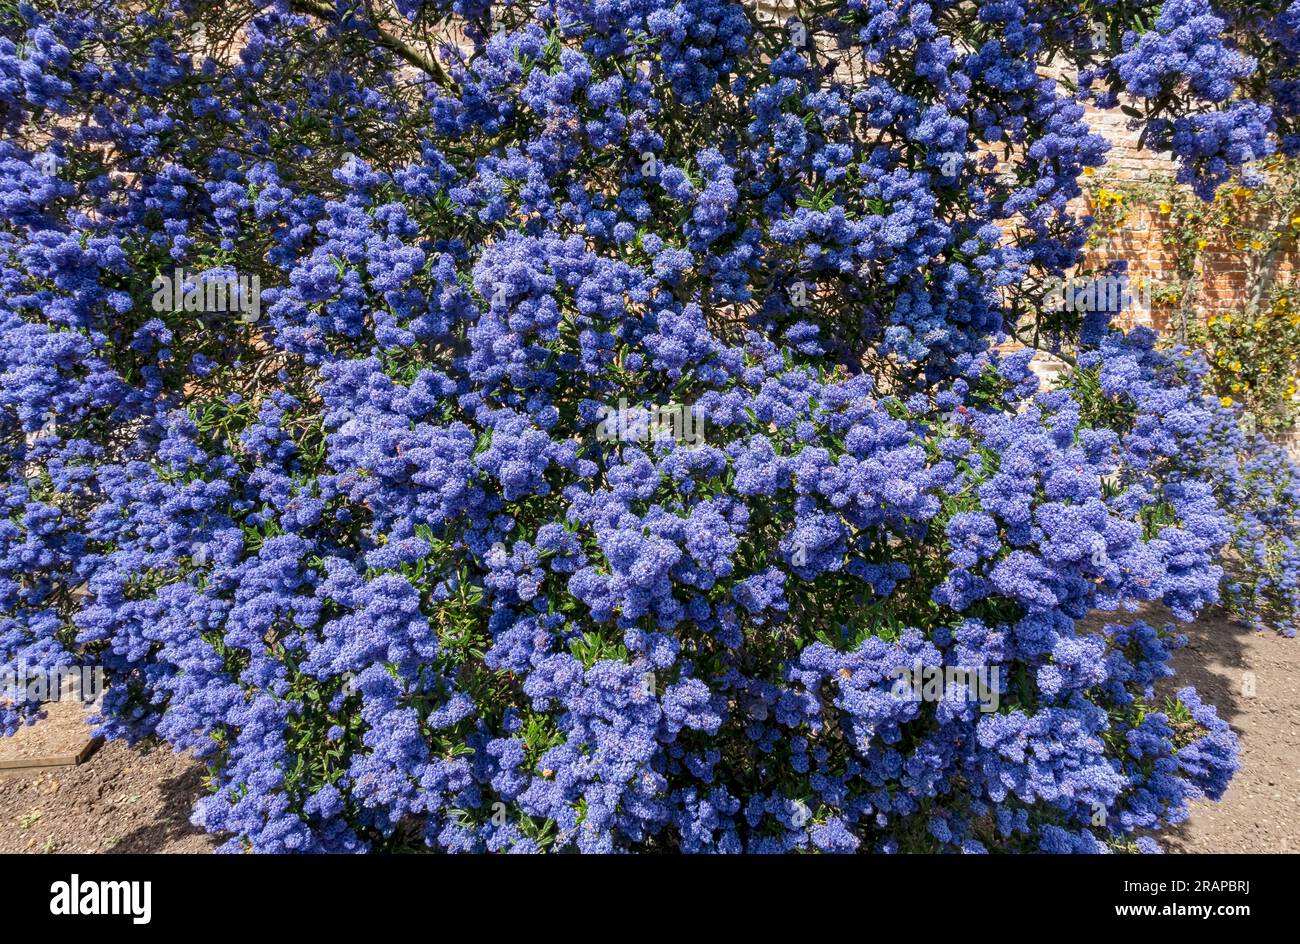 Grand ceanothus (lilas californien) arbuste fleurs bleues fleurissant en été Angleterre Royaume-Uni GB Grande-Bretagne Banque D'Images